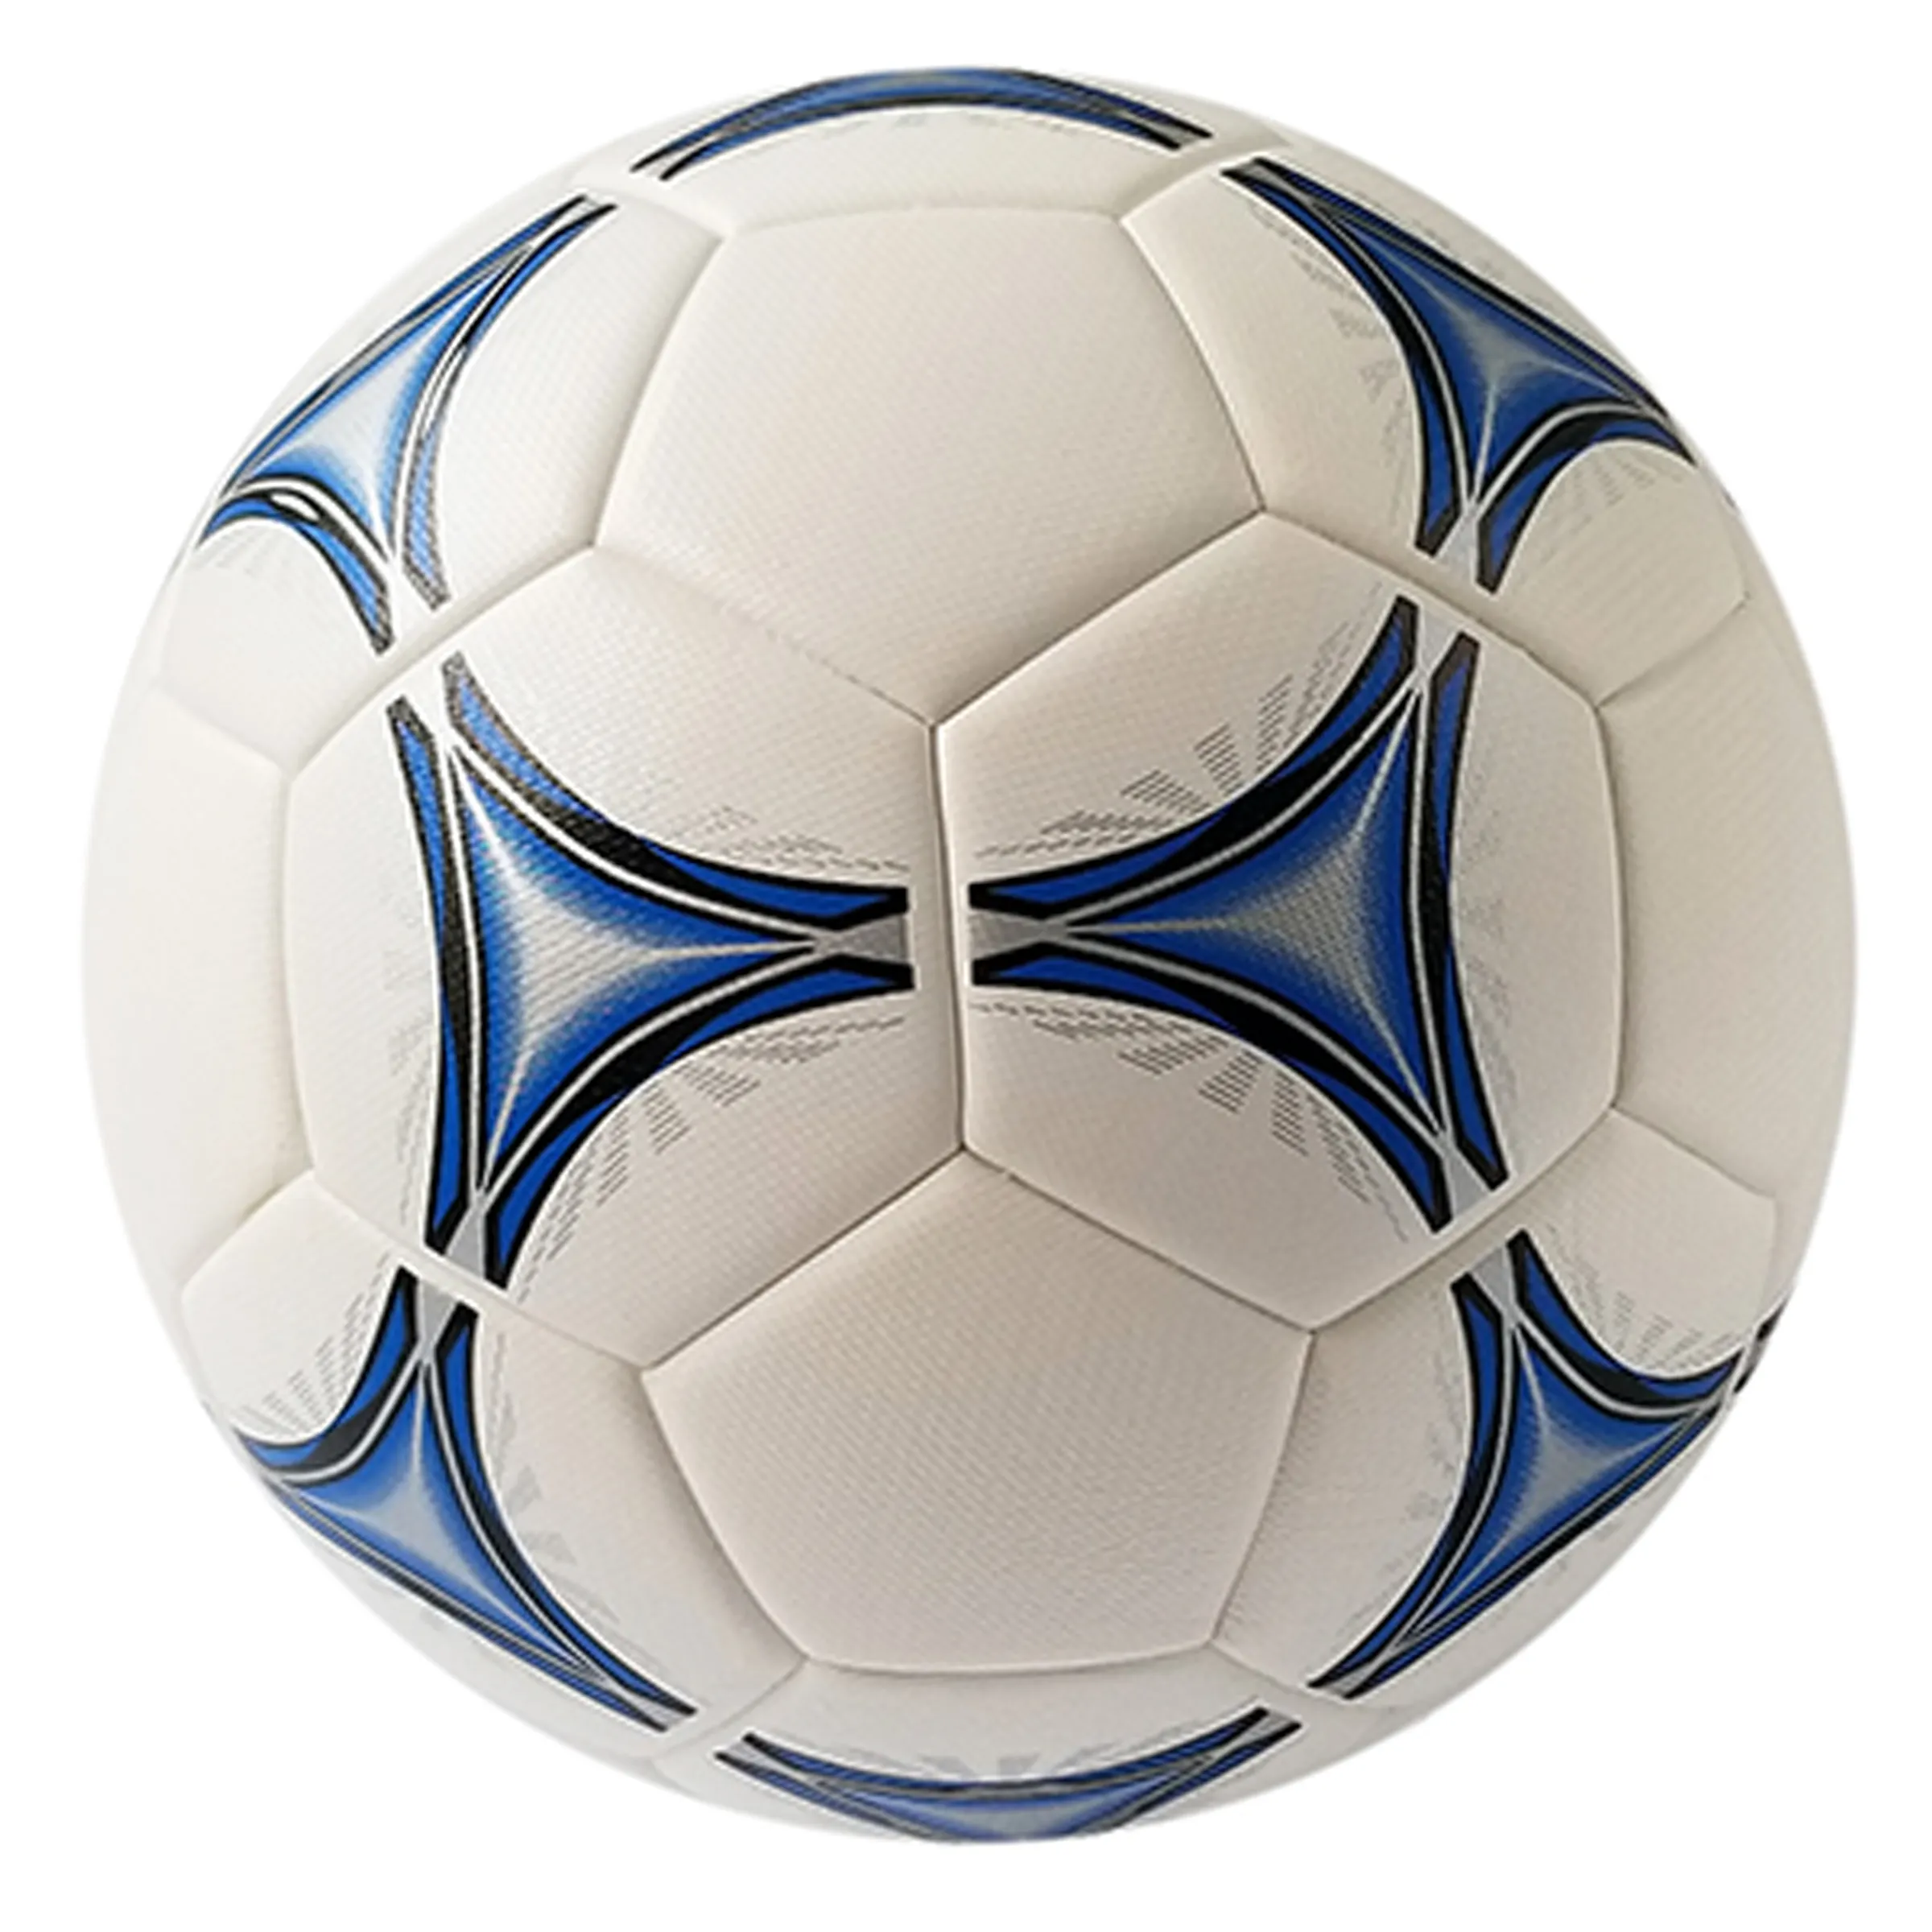 ฟุตบอลการแข่งขันคุณภาพสูงปรับแต่งการออกแบบการพิมพ์โลโก้ลูกฟุตบอลหนัง PU ขนาด 5 THERMAL BONDED สําหรับกีฬา